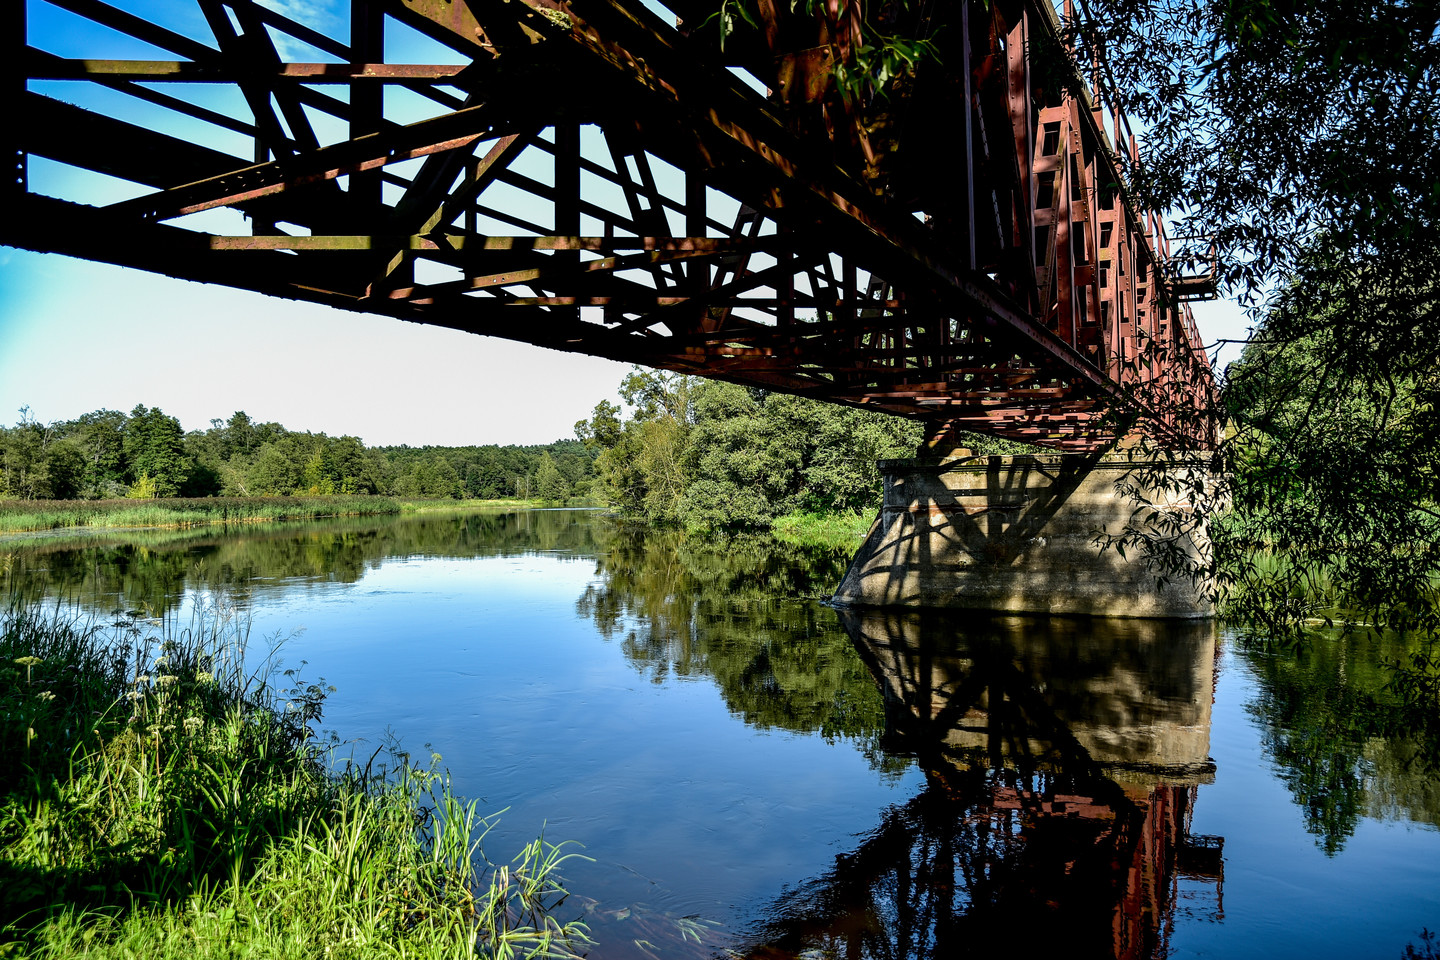  Anykščių geležinkelio tiltas per Šventosios upę, perstatytas po karo, yra didžiausias siaurojo geležinkelio tiltas, naudojamas ir dabar.<br> V.Ščiavinsko nuotr.